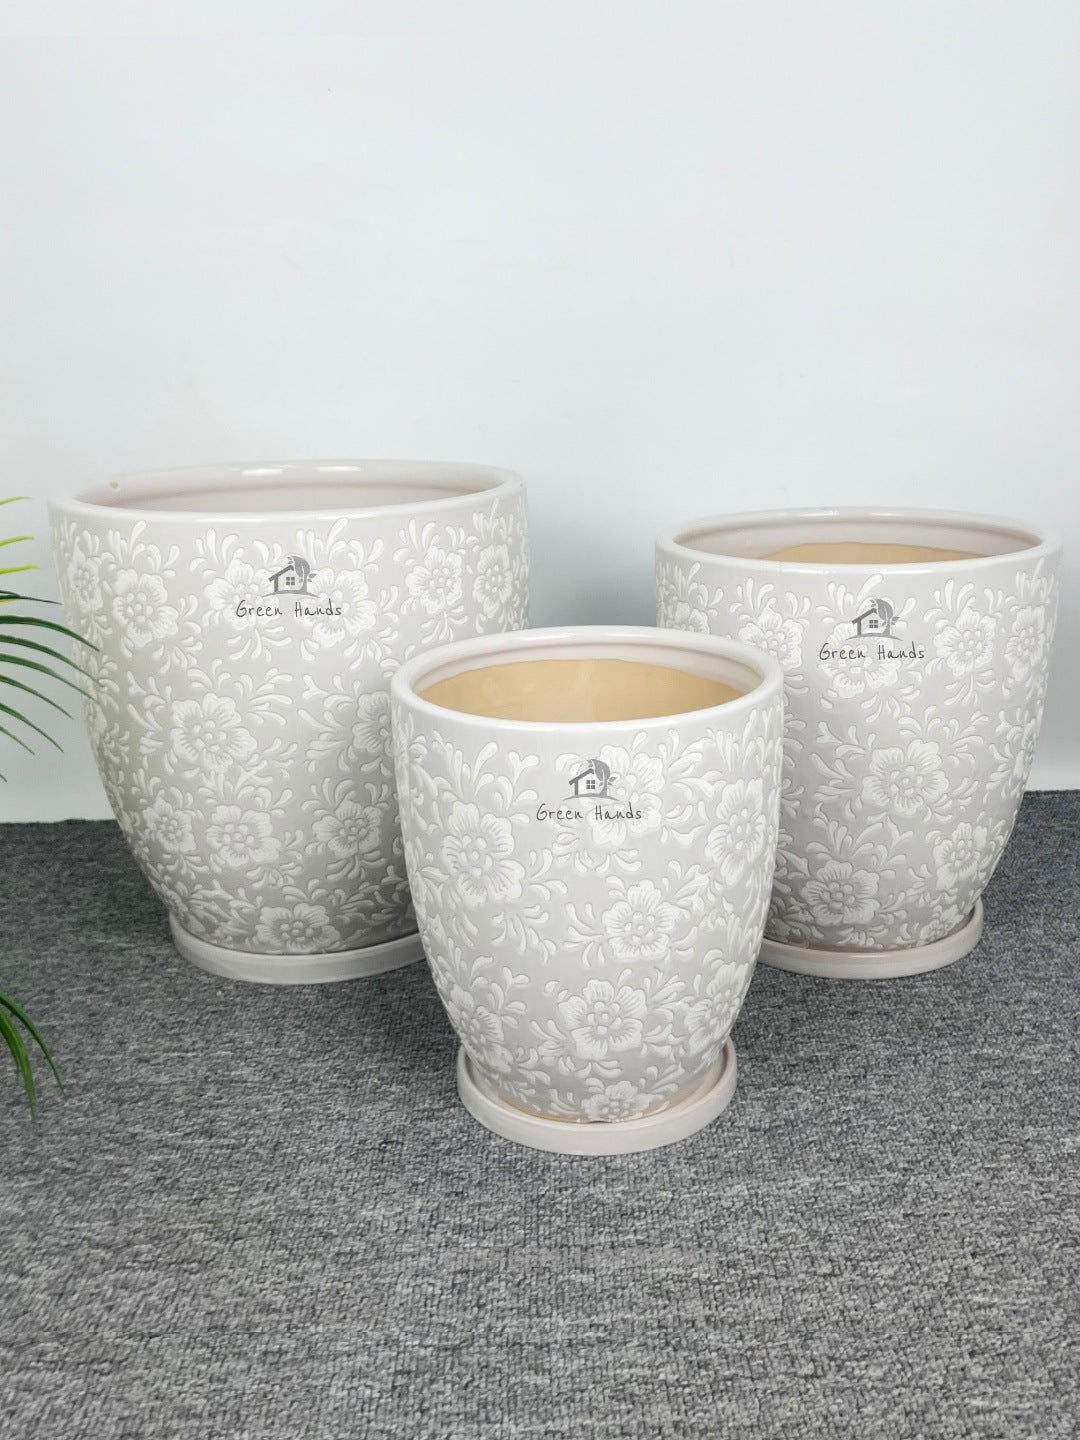 Antique Floral Ceramic Pots: Aesthetic Elegance for UAE Minimalist Spaces